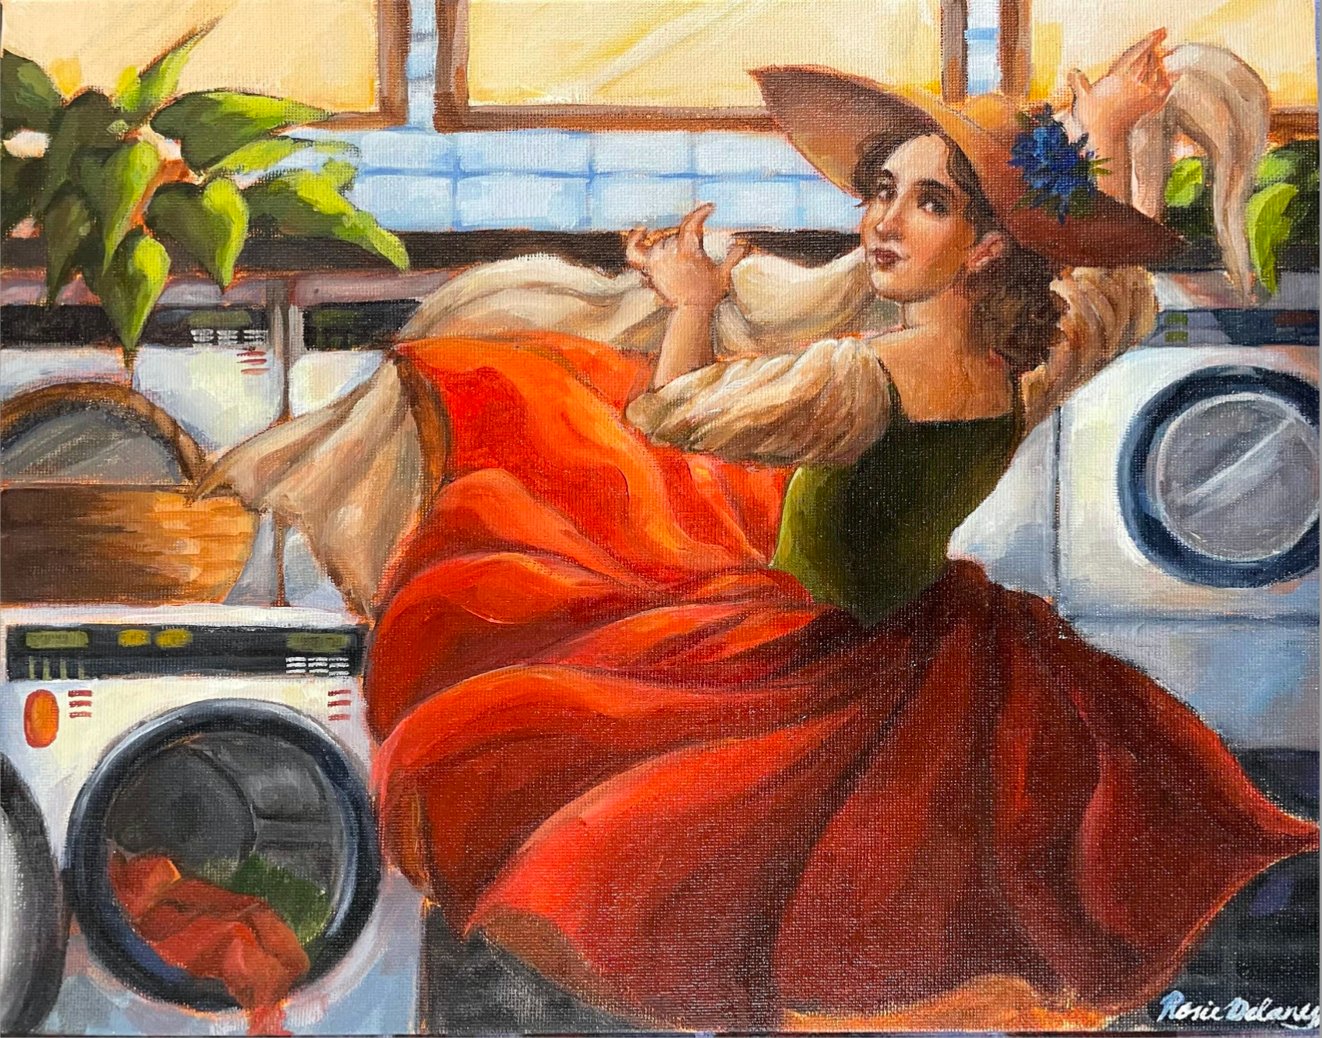 Rosie Delaney's "Laundry Day, 1750"